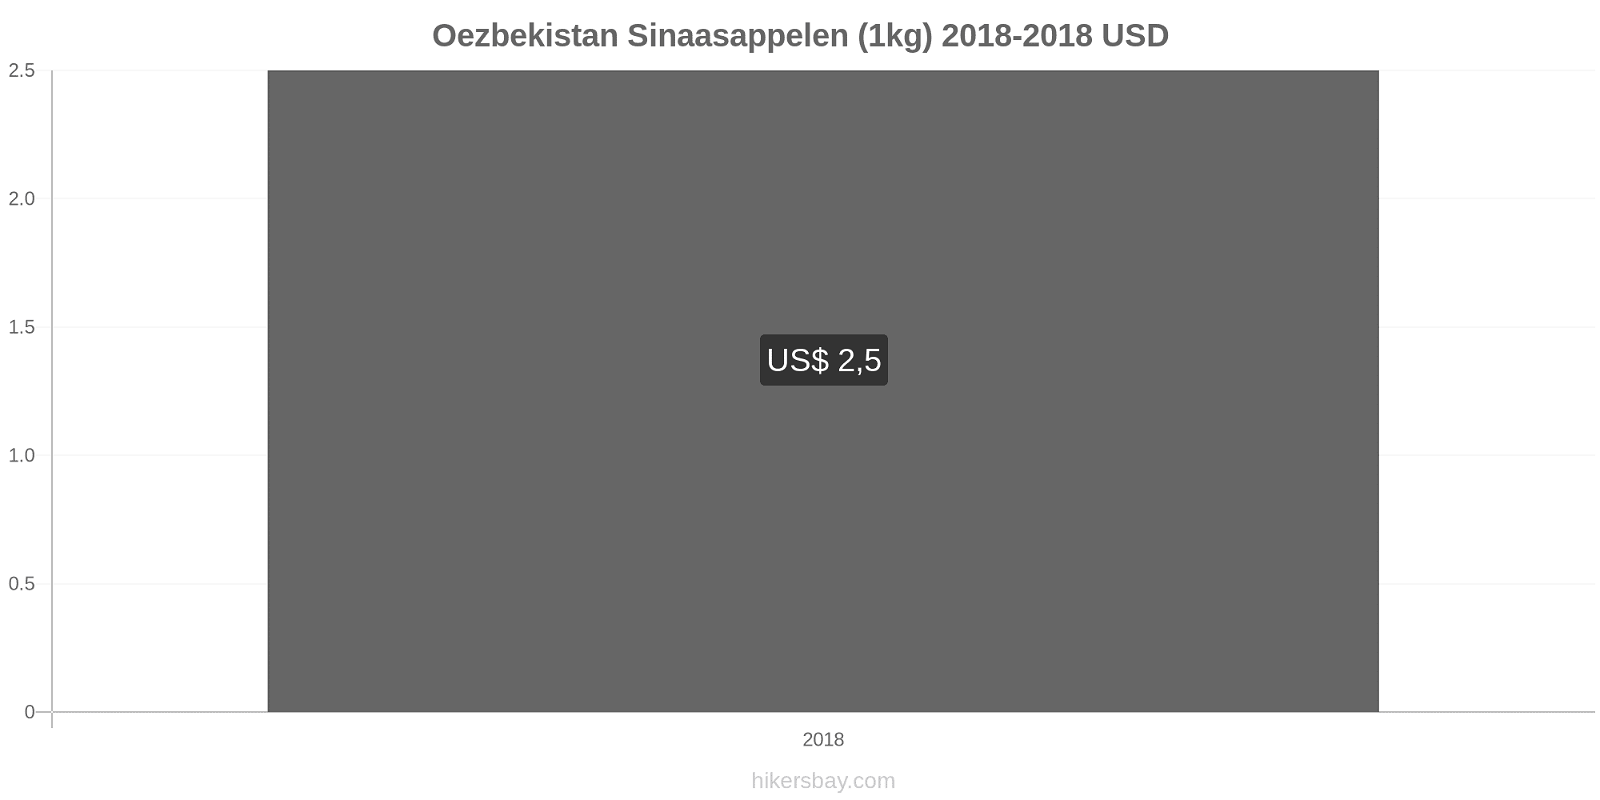 Oezbekistan prijswijzigingen Sinaasappels (1kg) hikersbay.com